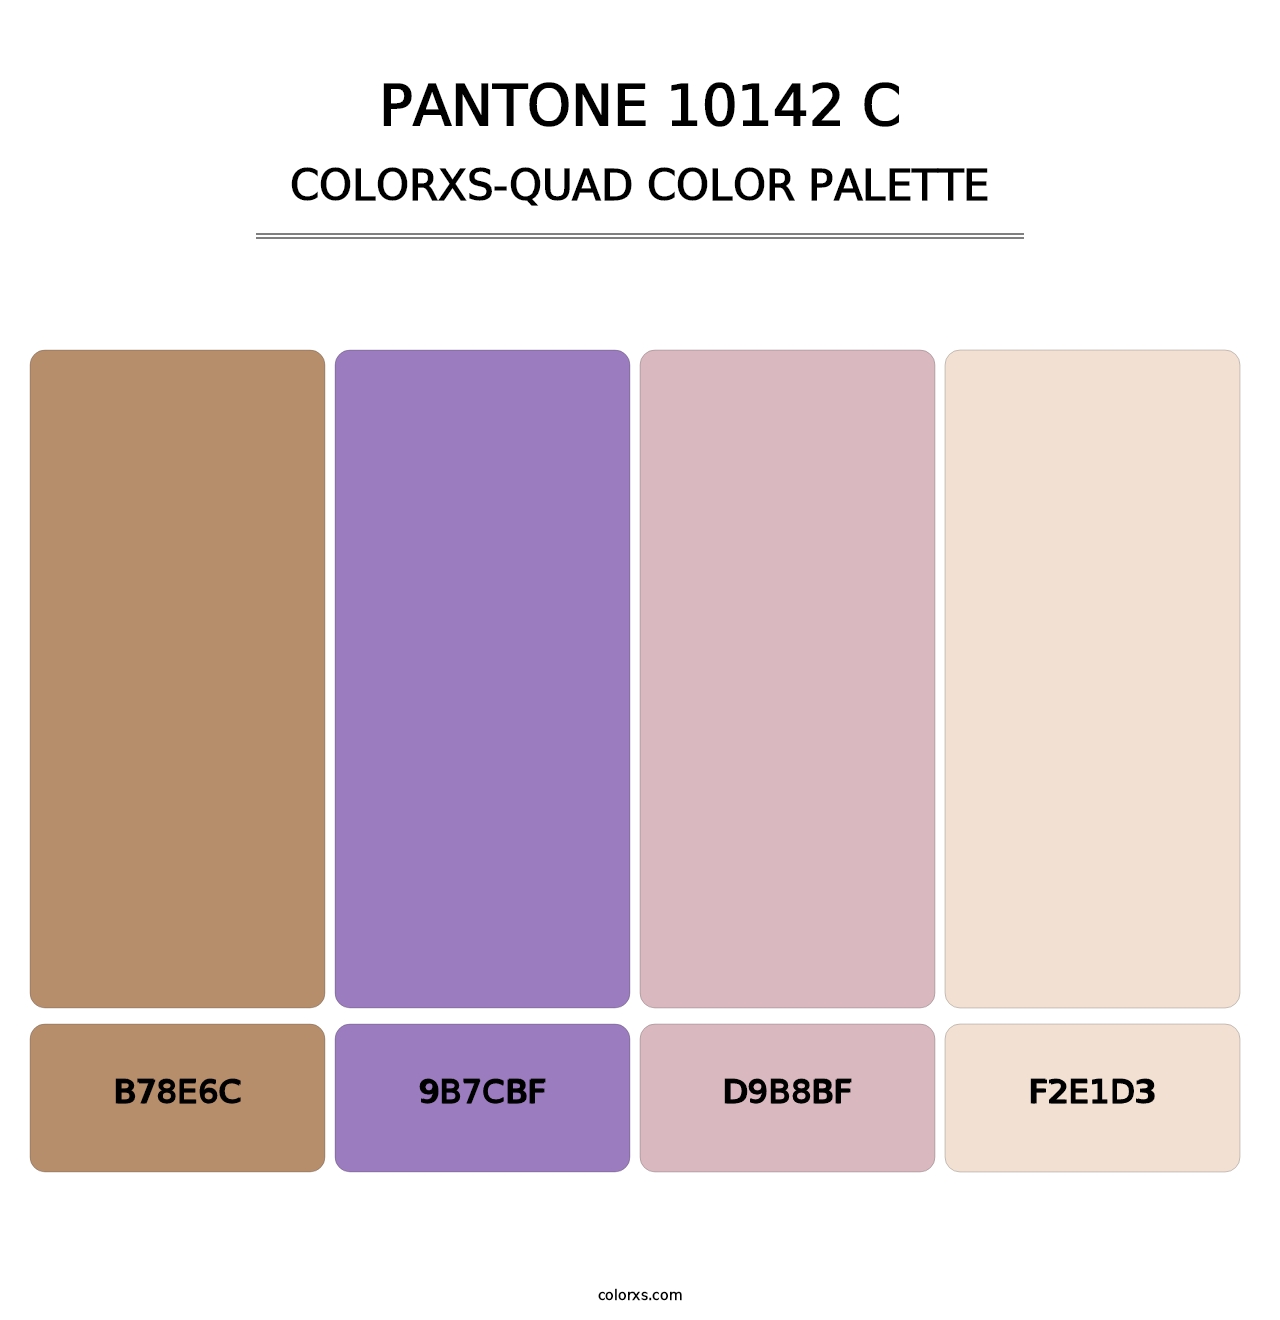 PANTONE 10142 C - Colorxs Quad Palette